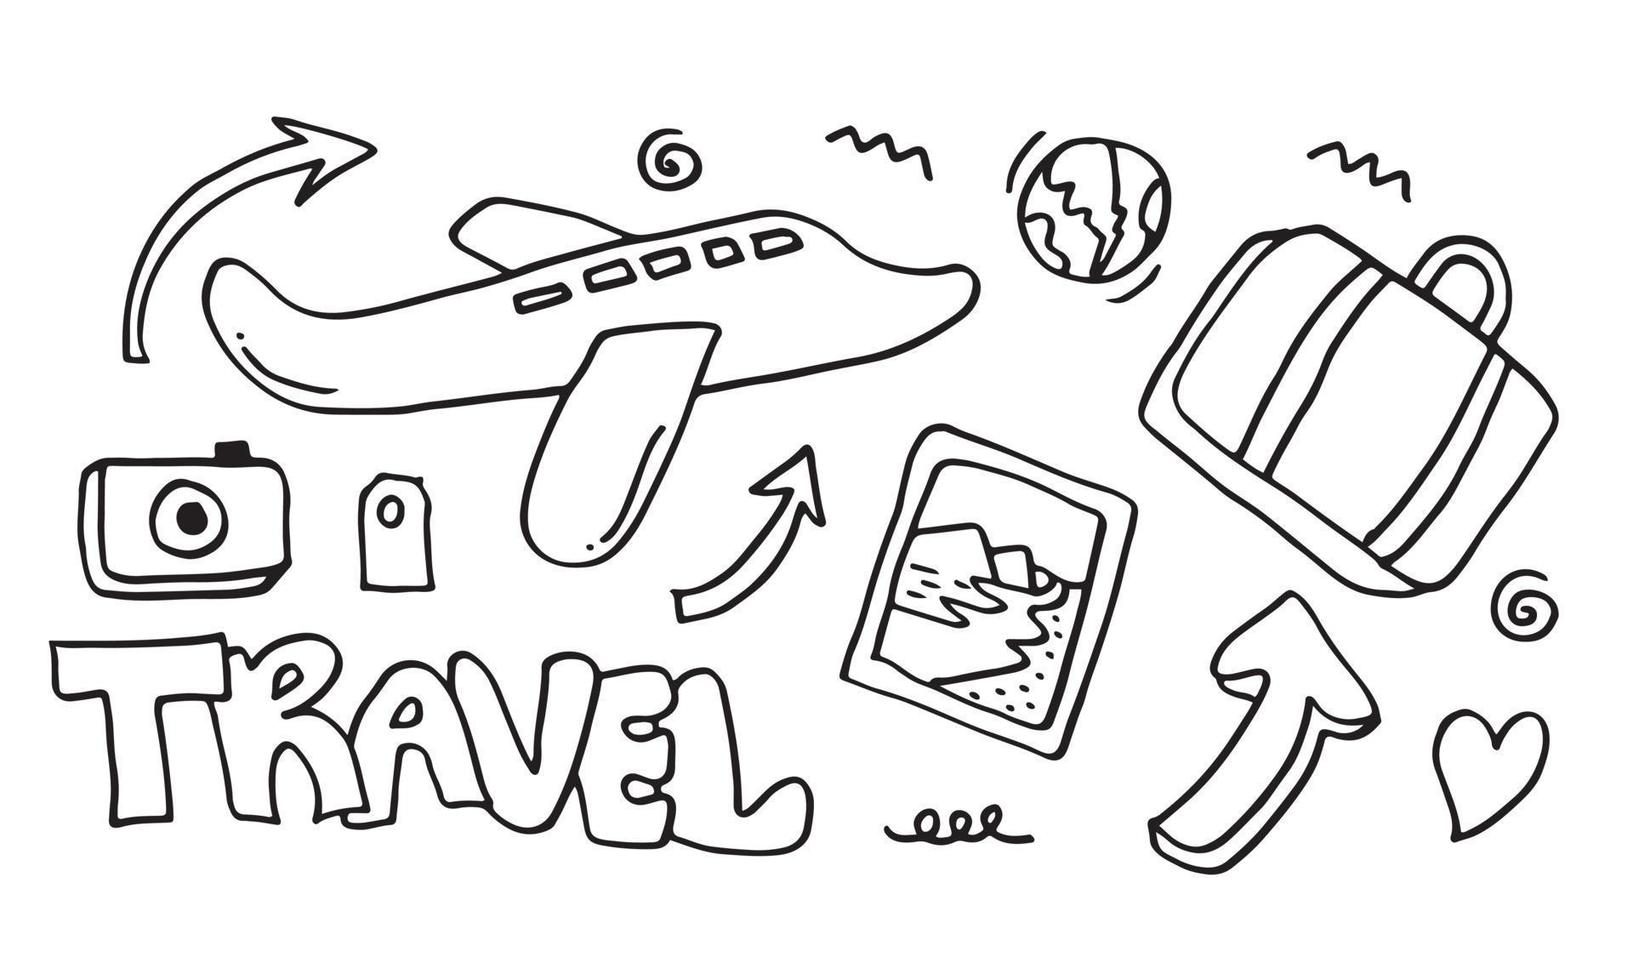 satz von handgezeichneten reisekritzeln. Vektor-illustration.doodle Art World Travel Collection Design. vektor